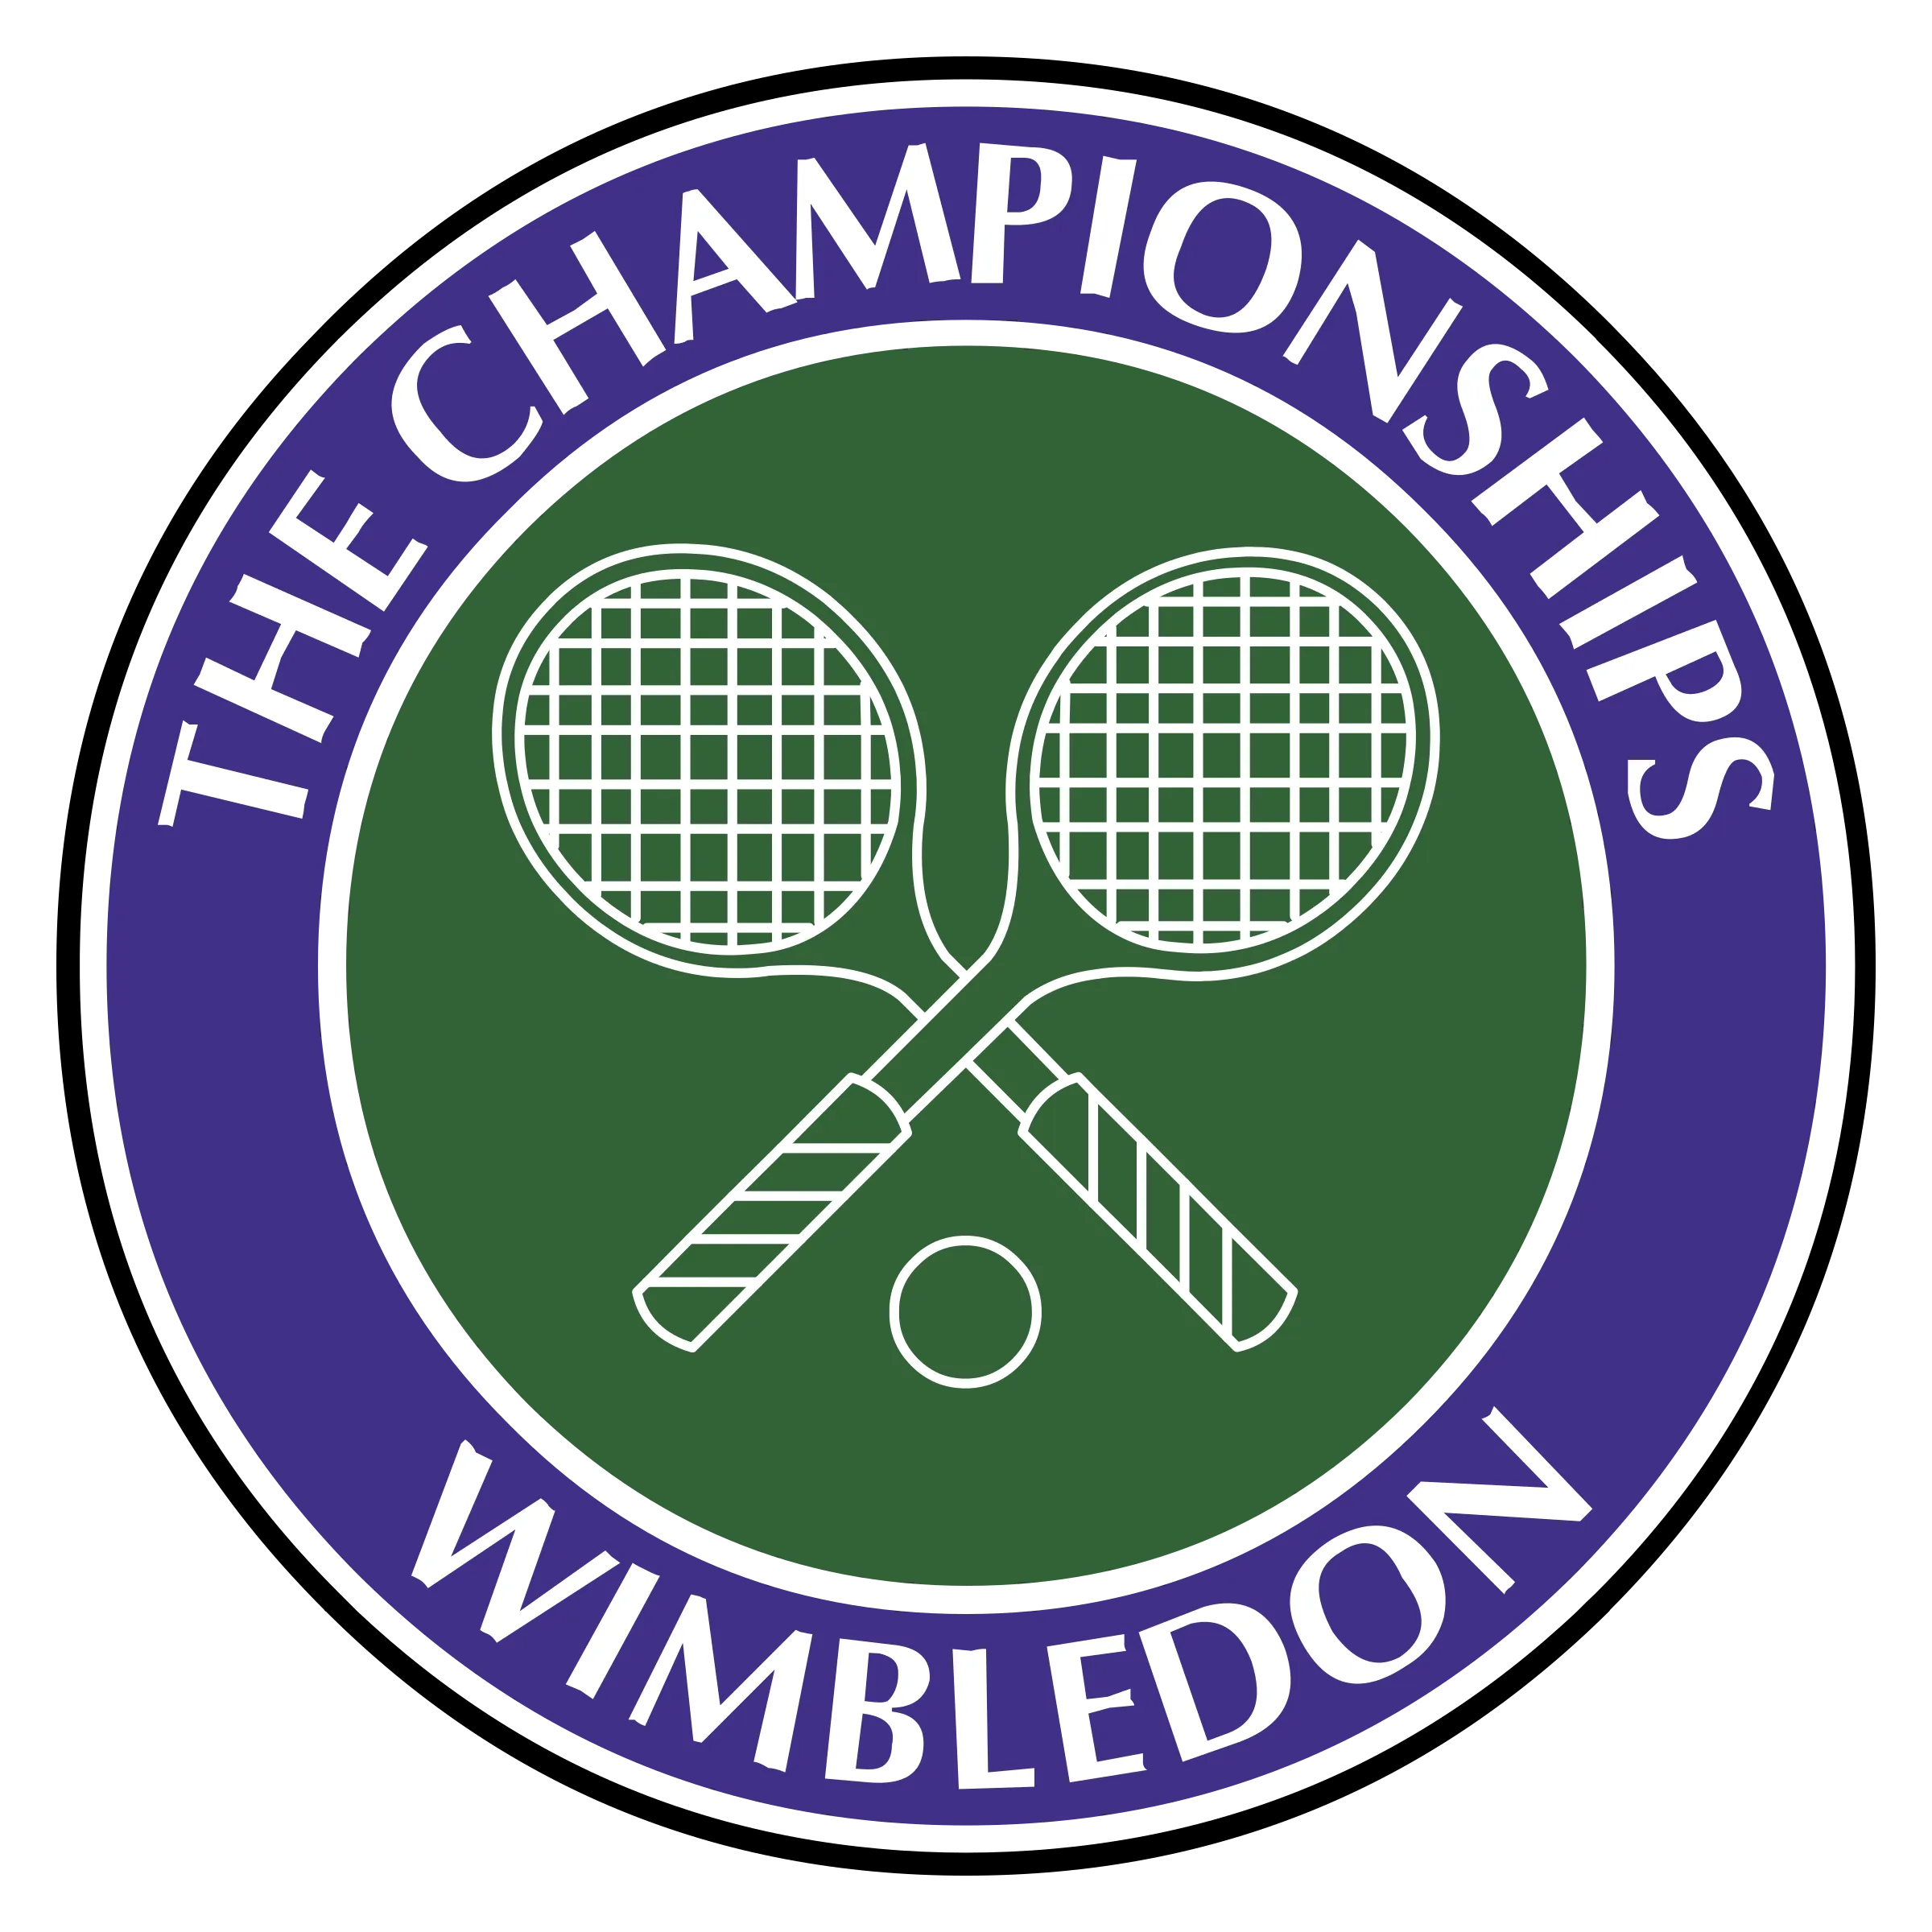 Wimbledon, 1/2 finału, 08.07.22. godz. 14:00Nick Kyrgios - Rafael NadalTyp: 1 z handicapem: Kyrgios (- 4,5 gema)